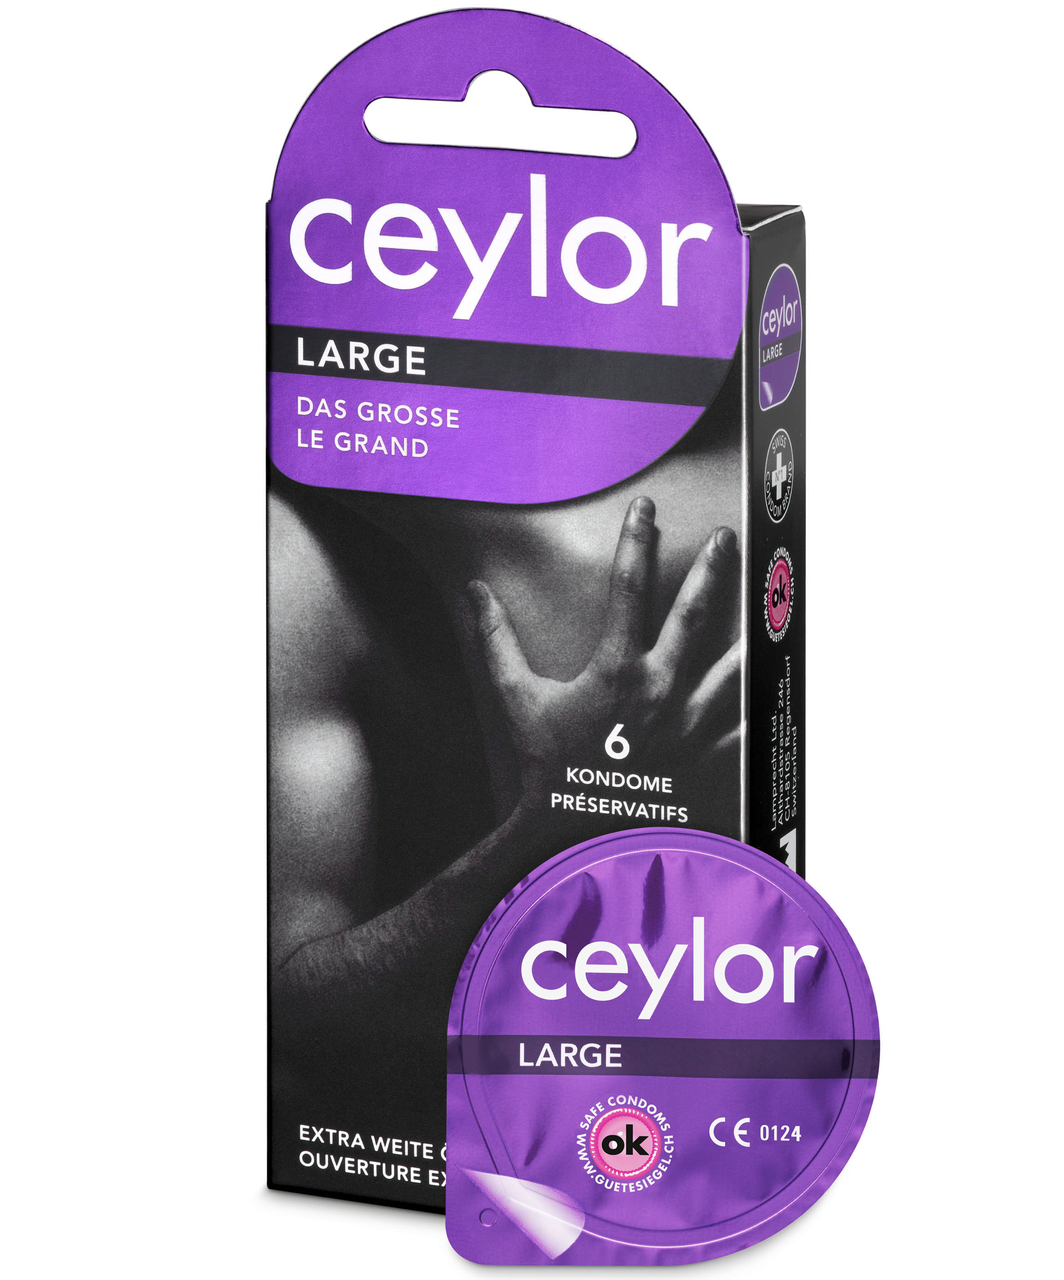 Ceylor Large (6 pcs)